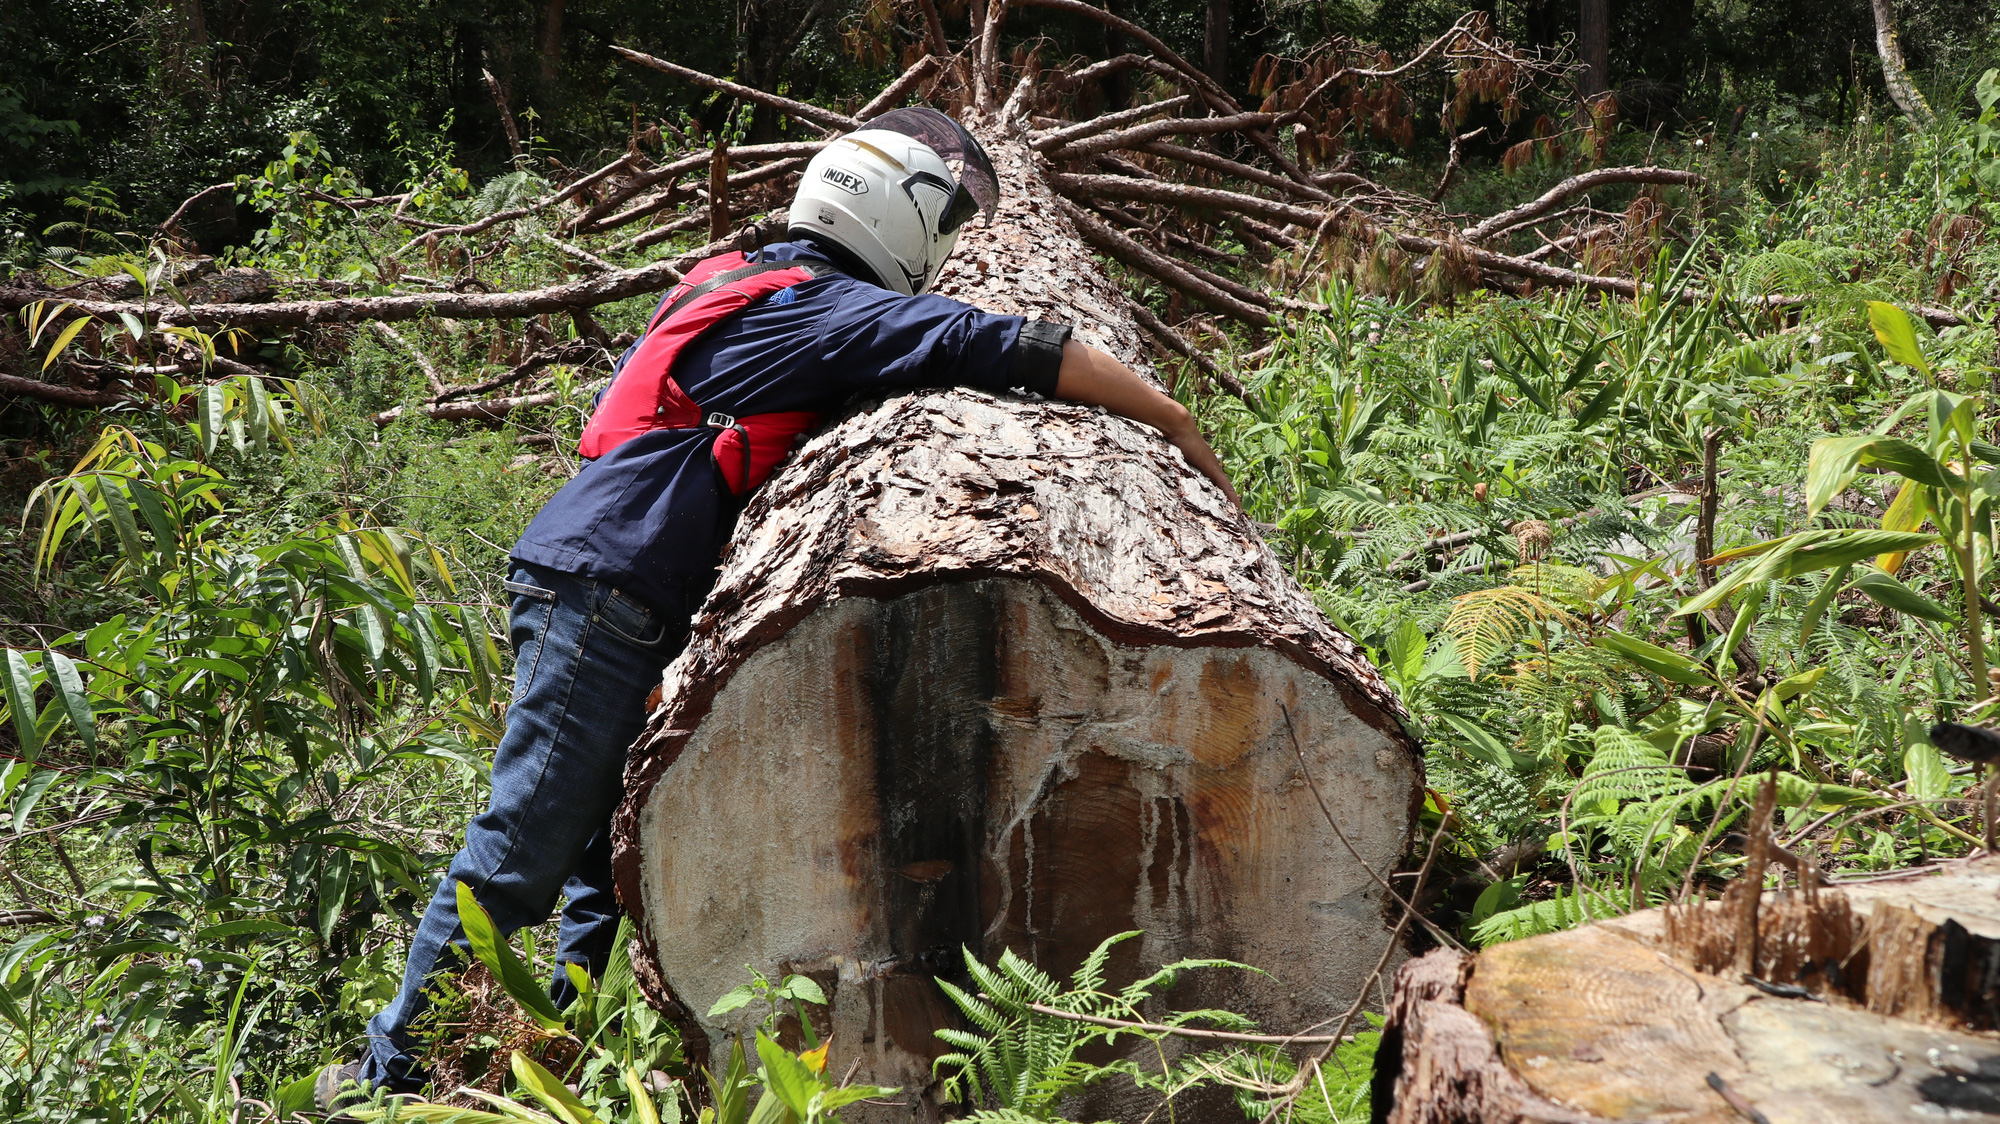  Lâm Đồng: Tạm đình chỉ công tác 4 Trưởng ban quản lý rừng do thiếu trách nhiệm - Ảnh 1.